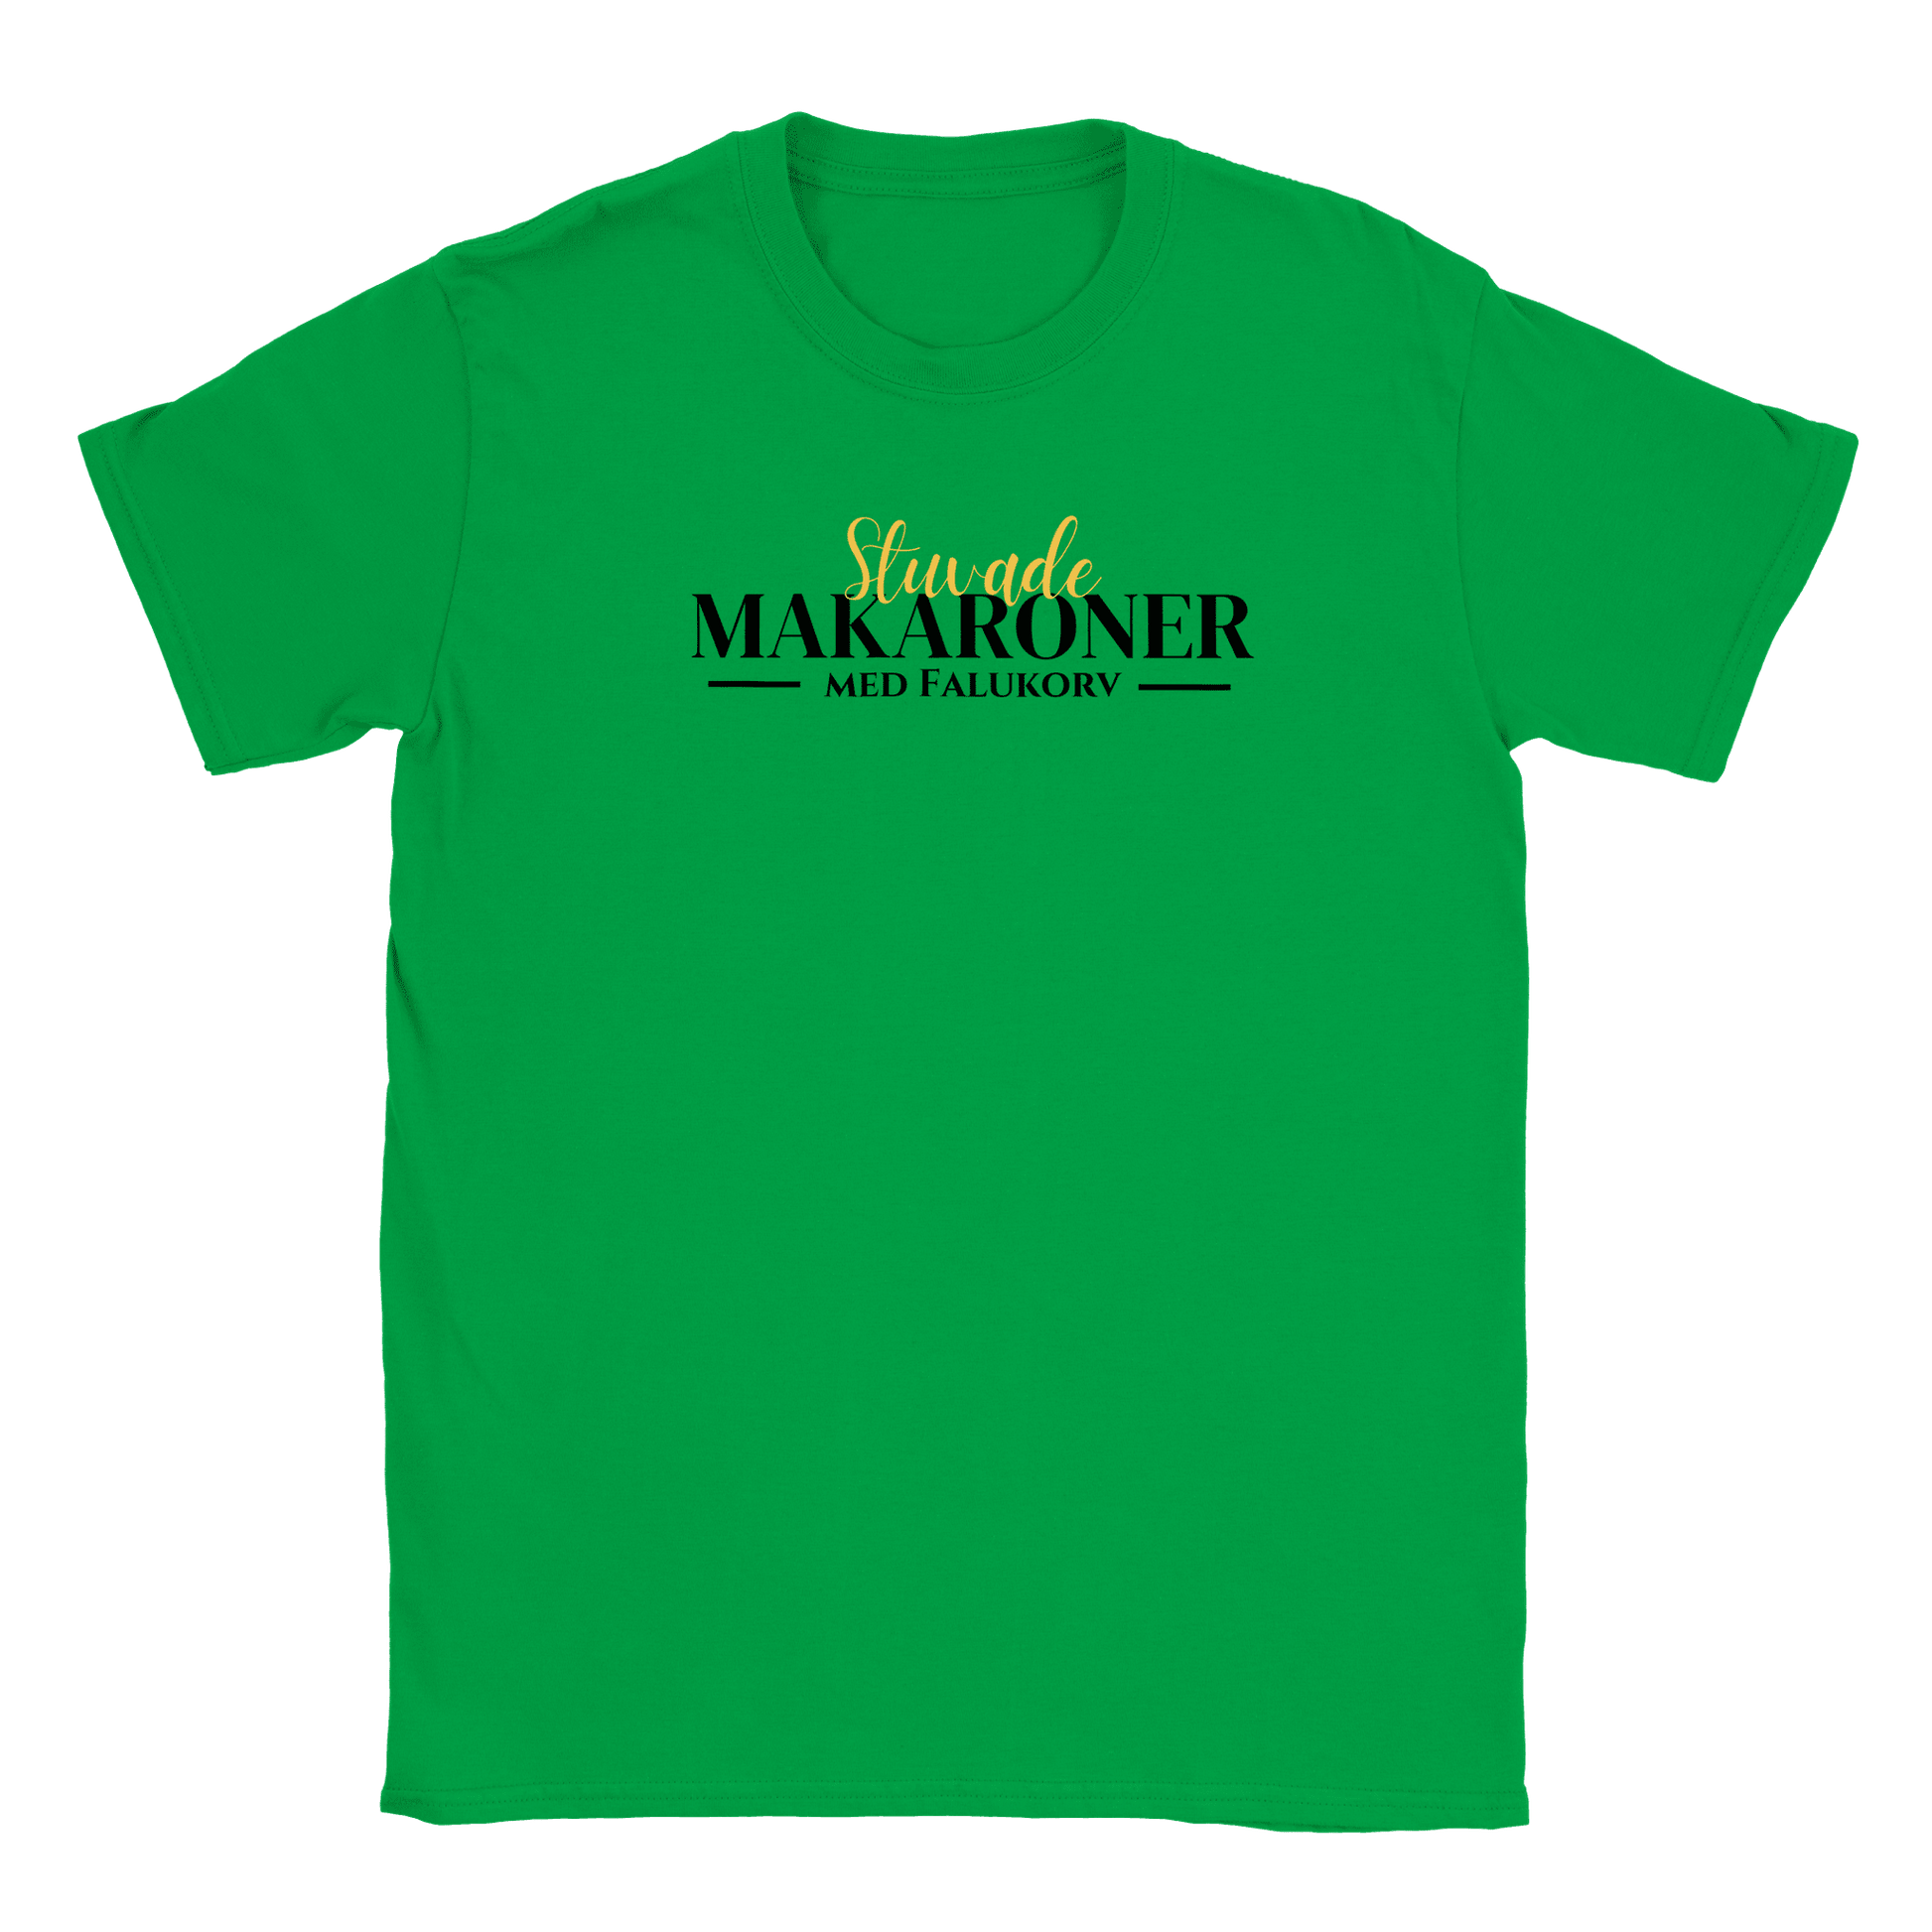 Stuvade makaroner med falukorv - T-shirt för barn Grön